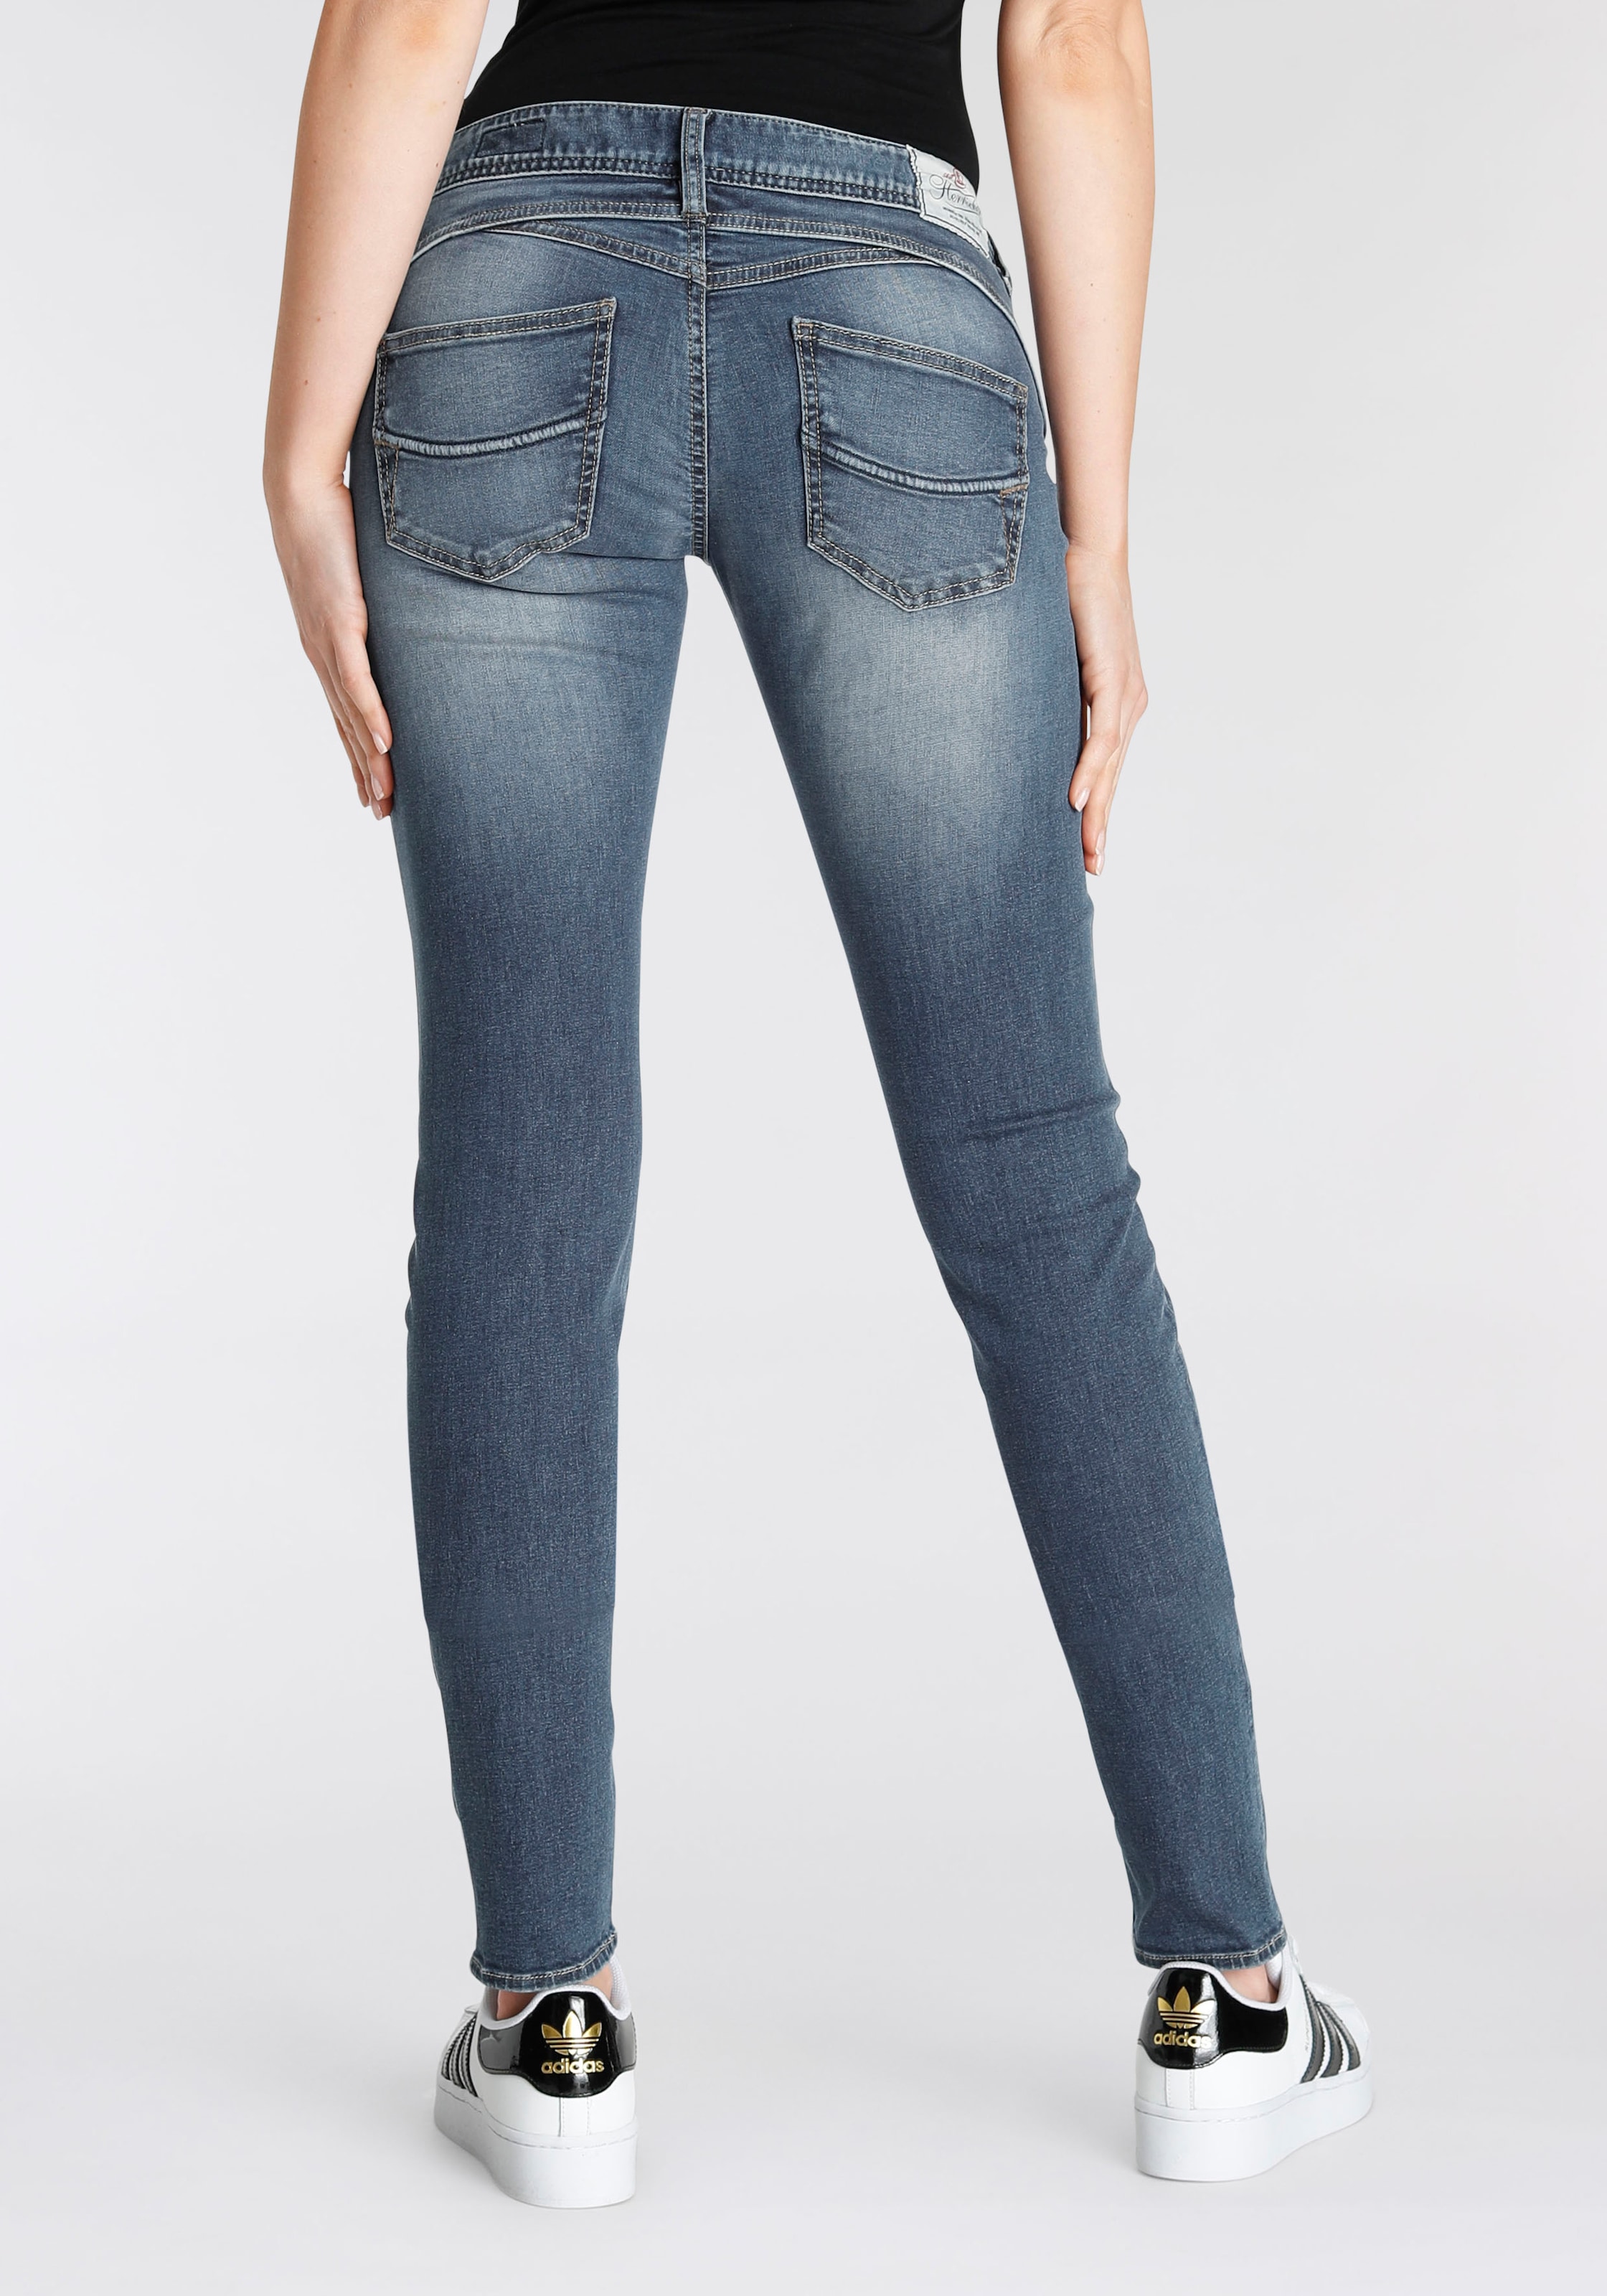 Herrlicher Slim-fit-Jeans »Gila Slim Organic Technology dank Denim«, umweltfreundlich kaufen Kitotex